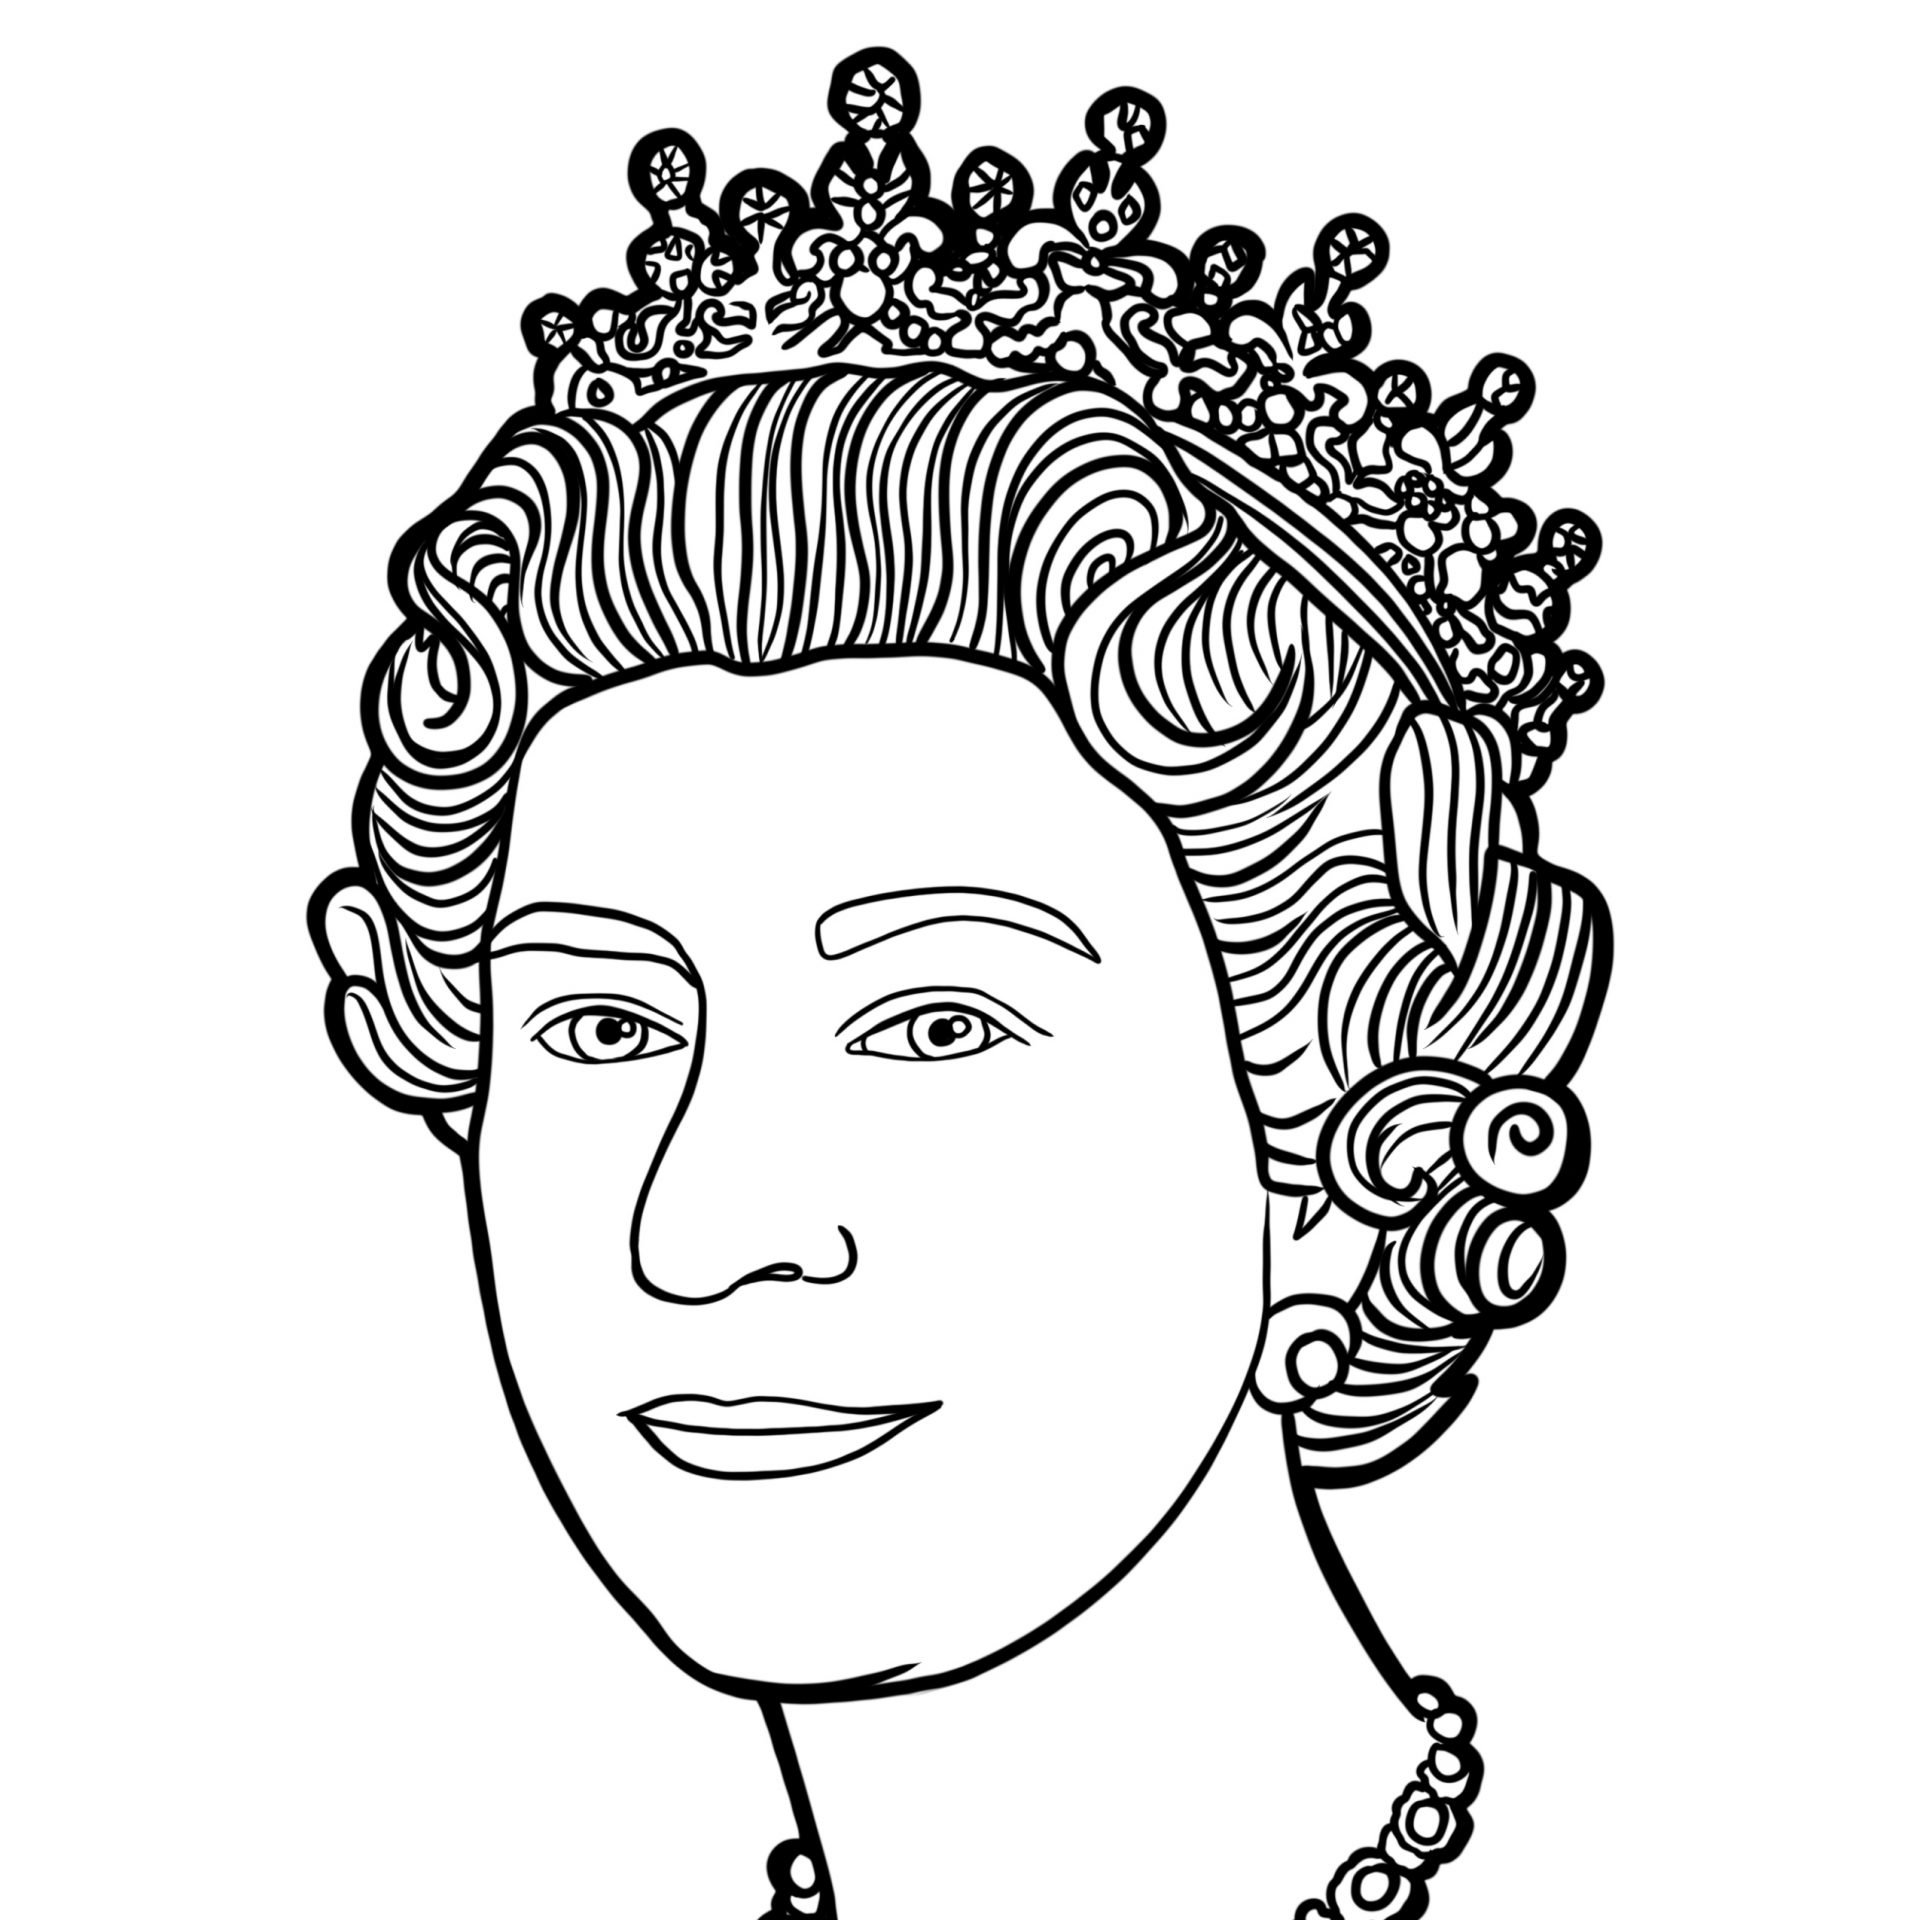 Queen elizabeth ii coloring page